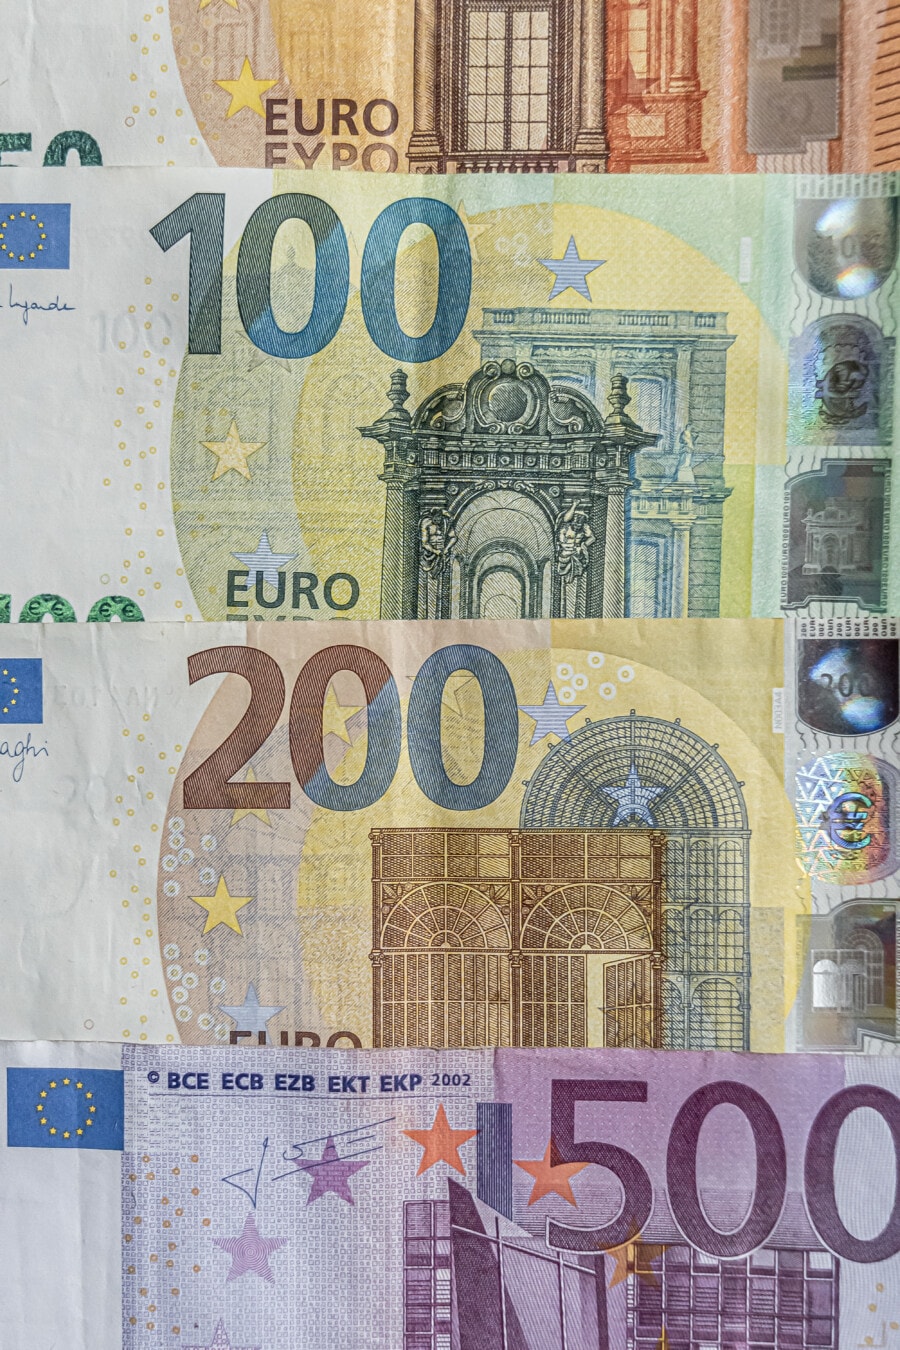 Κλείσιμο τραπεζογραμματίων χαρτονομισμάτων ευρώ (€50, €100, €200, €500)